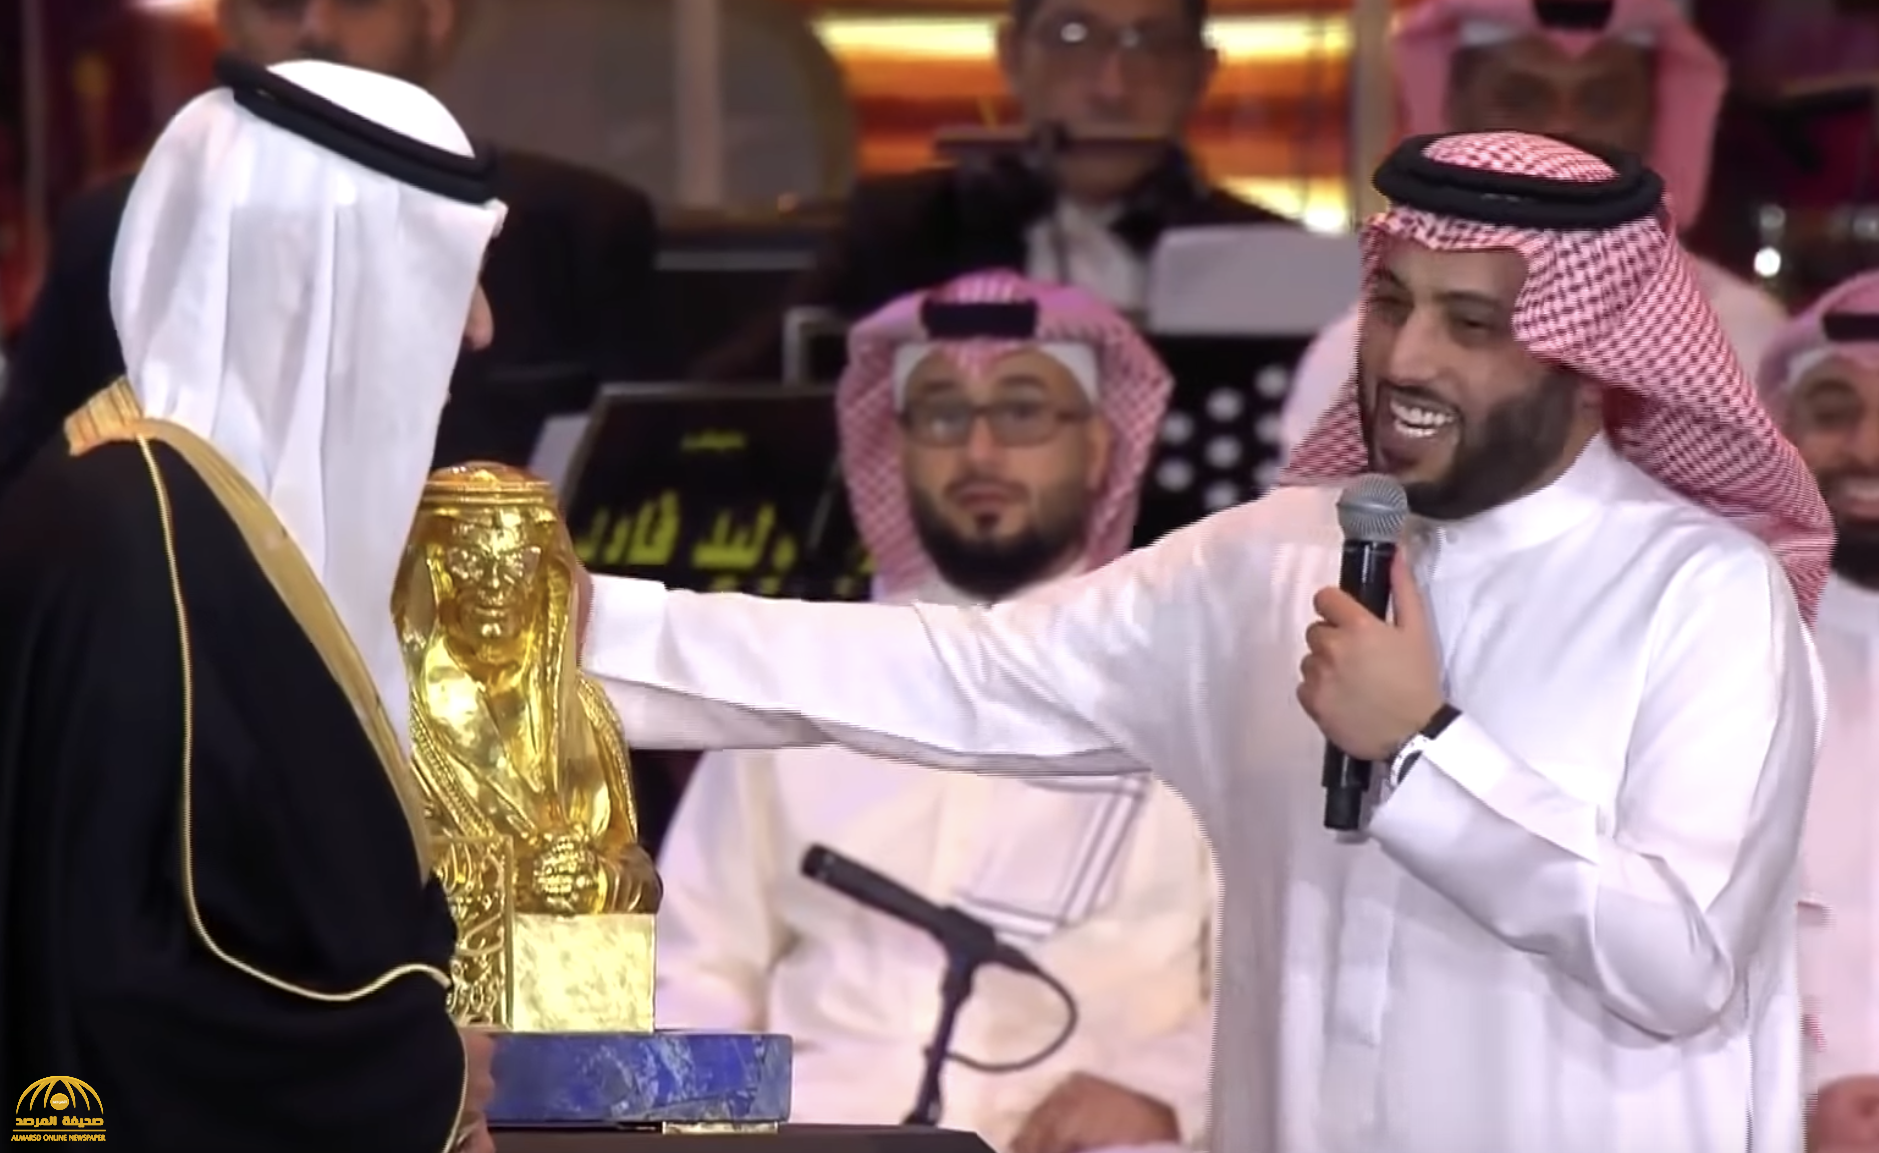 شاهد: "آل الشيخ" يفاجئ الأمير "بدر بن عبدالمحسن" بهدية تمثال له من الذهب الخالص